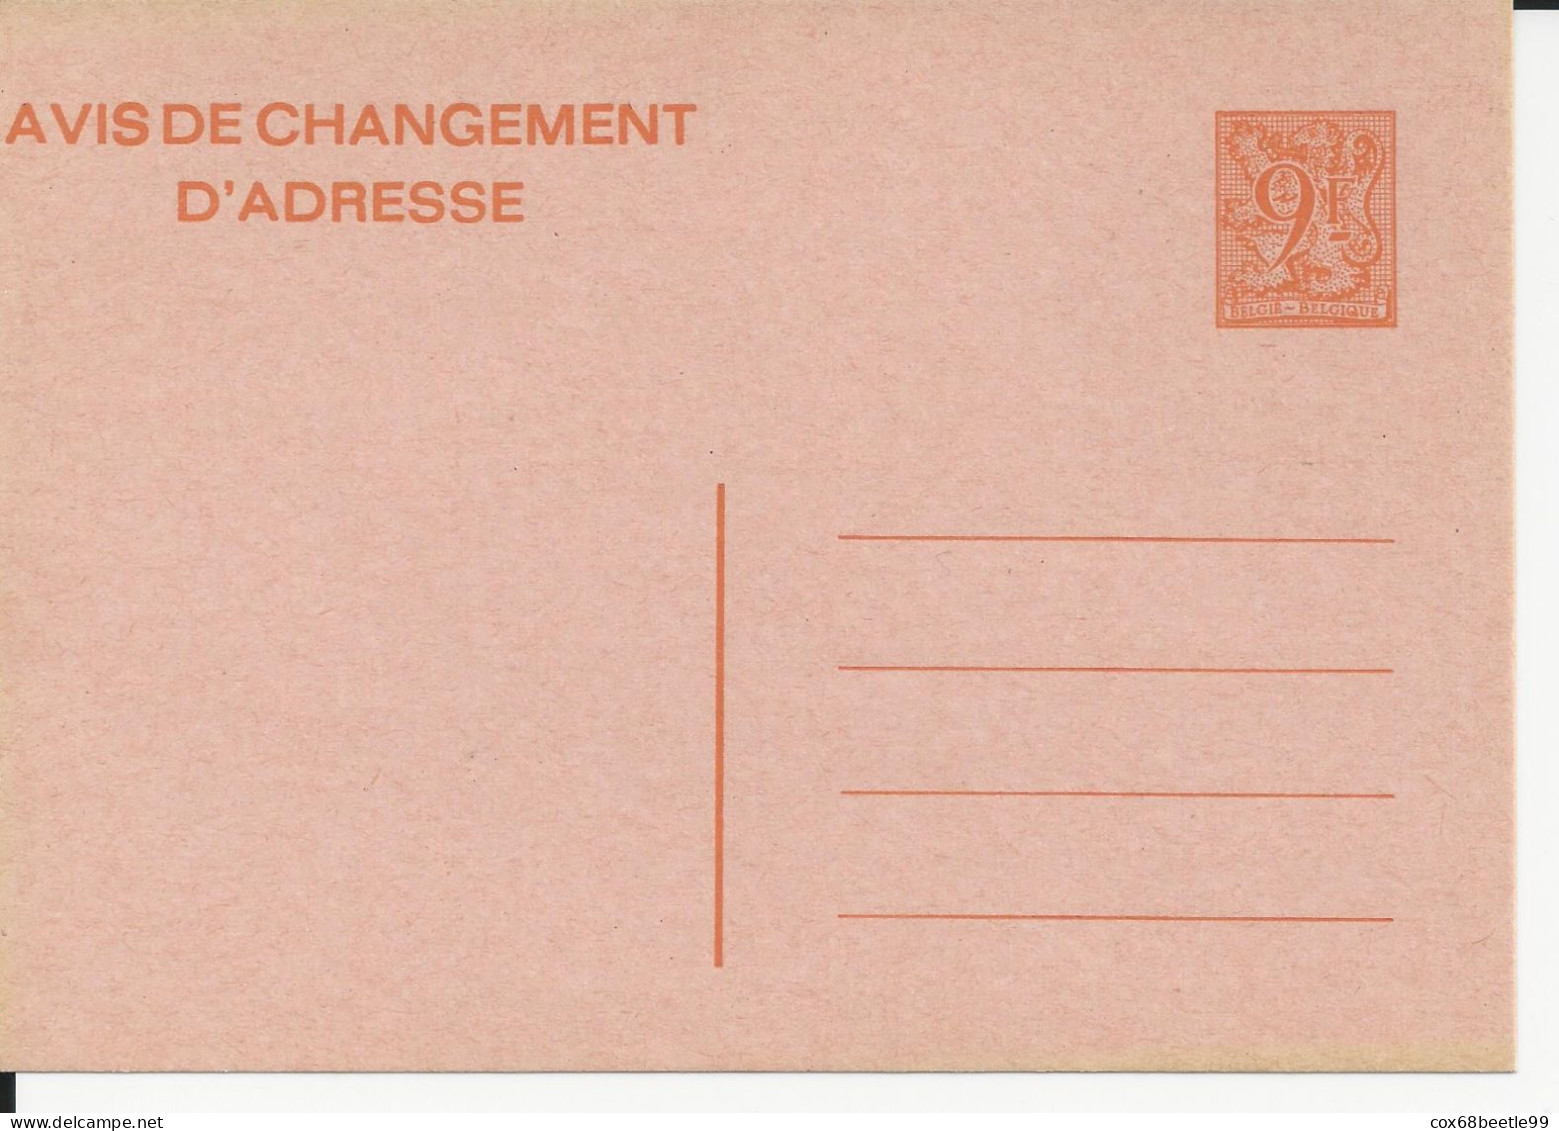 Belgique Belgie Avis Changement D'adresse 9 Francs Neuf Non Circulé - Avis Changement Adresse